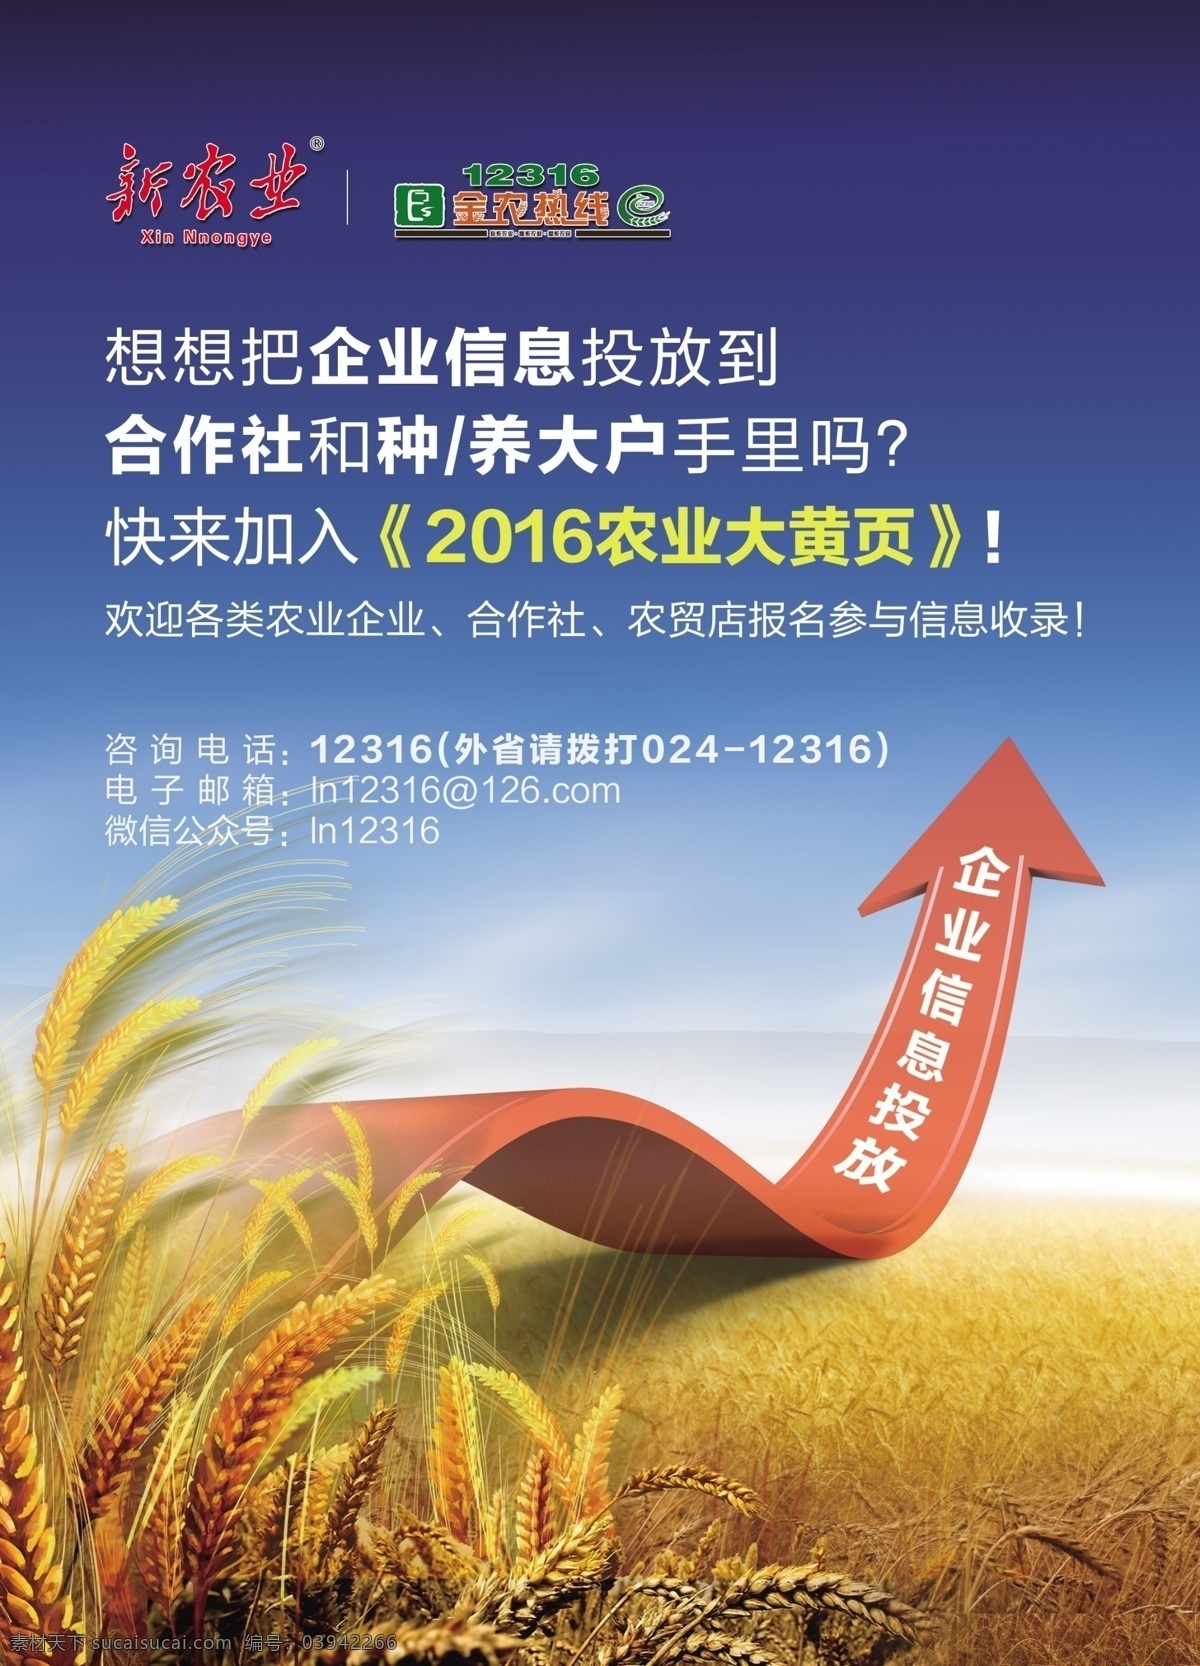 杂志 招商 广告单 页 广告 单页 农业 海报